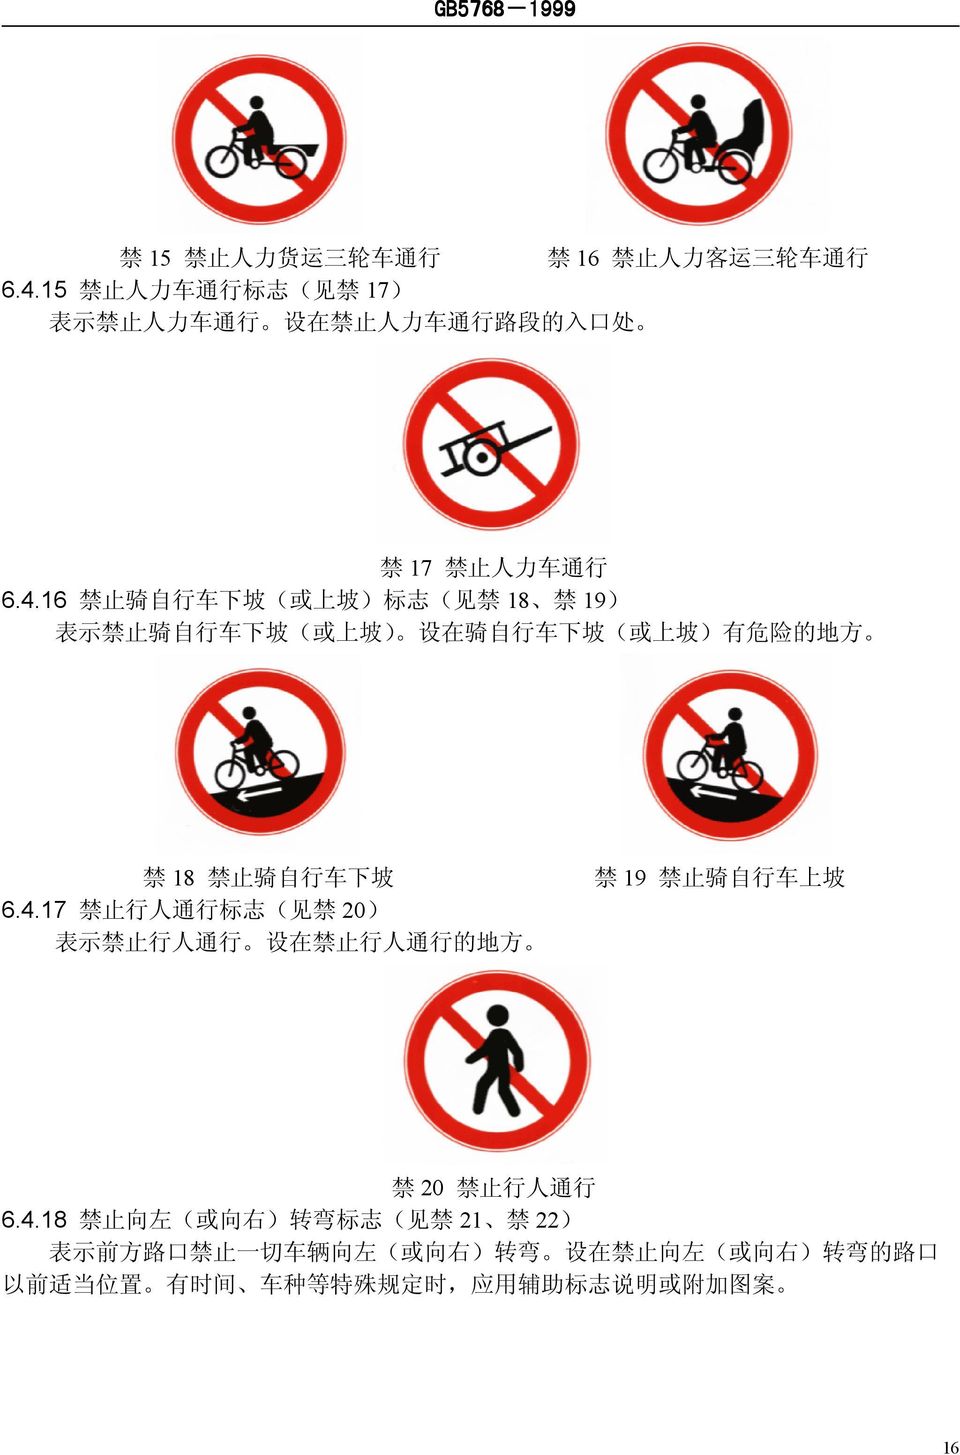 16 禁 止 骑 自 行 车 下 坡 ( 或 上 坡 ) 标 志 ( 见 禁 18 禁 19) 表 示 禁 止 骑 自 行 车 下 坡 ( 或 上 坡 ) 设 在 骑 自 行 车 下 坡 ( 或 上 坡 ) 有 危 险 的 地 方 禁 18 禁 止 骑 自 行 车 下 坡 6.4.